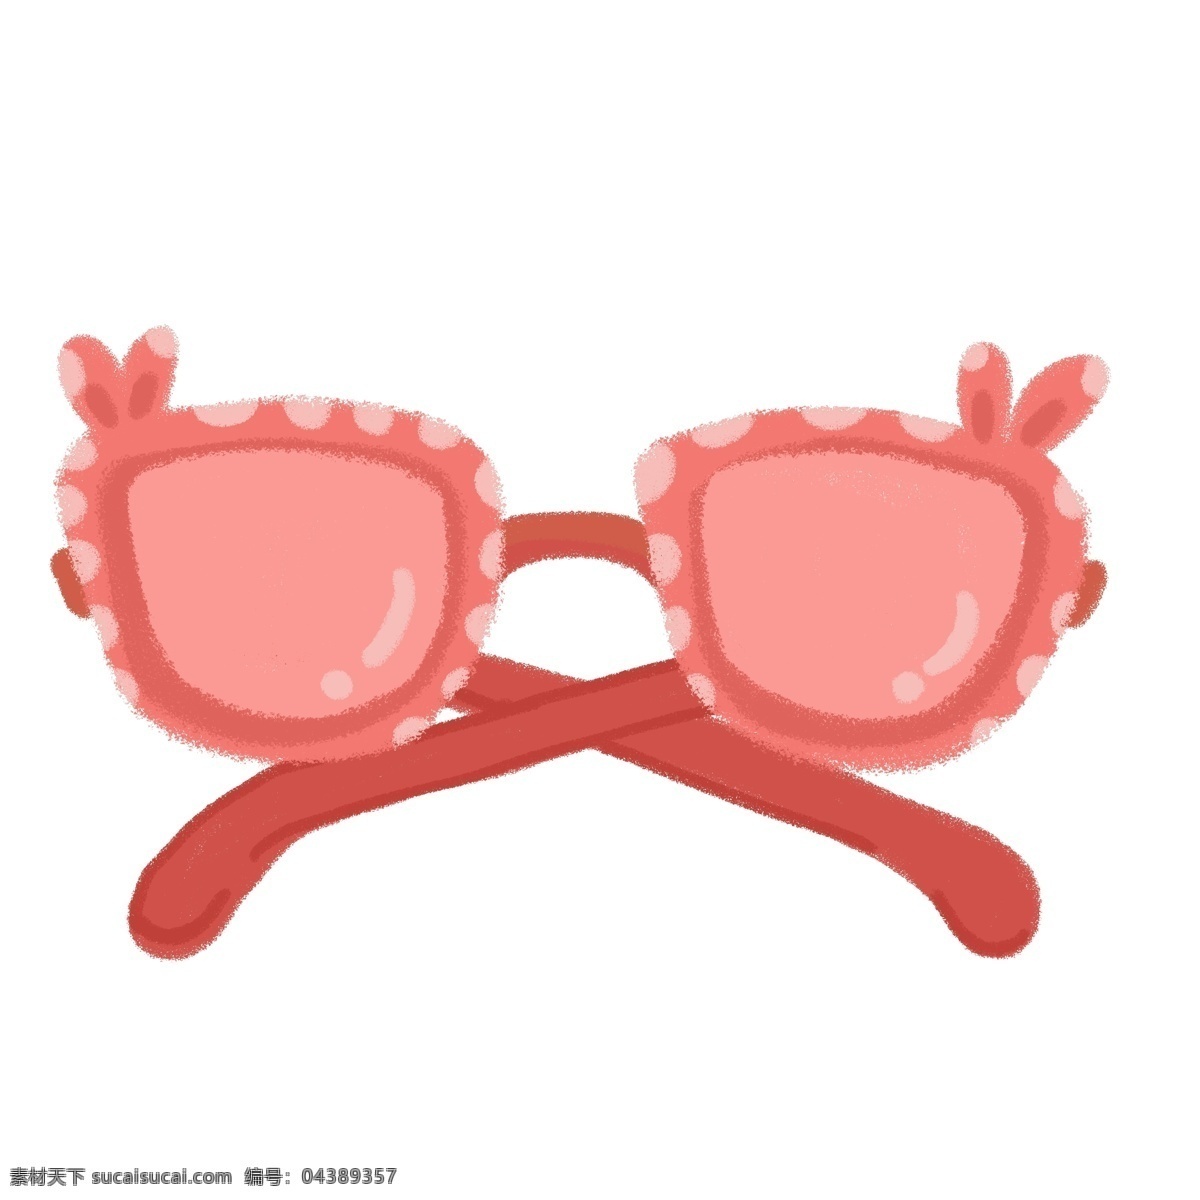 粉红色 墨镜 太阳镜 可爱 清新 卡通